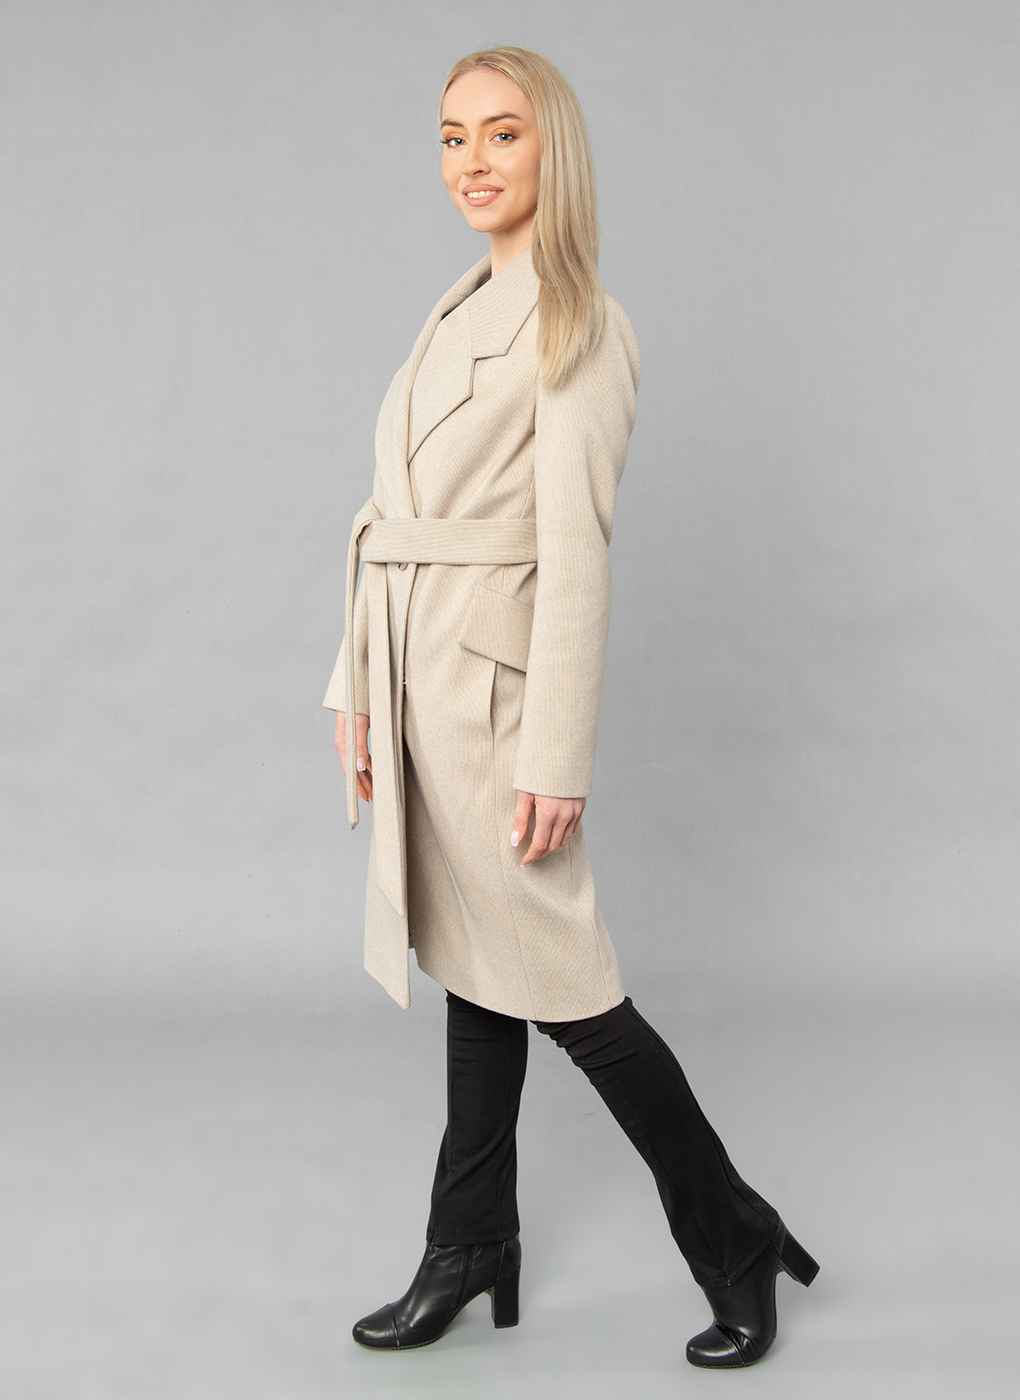 Пальто женское Sezalto 55023 бежевое 48 RU